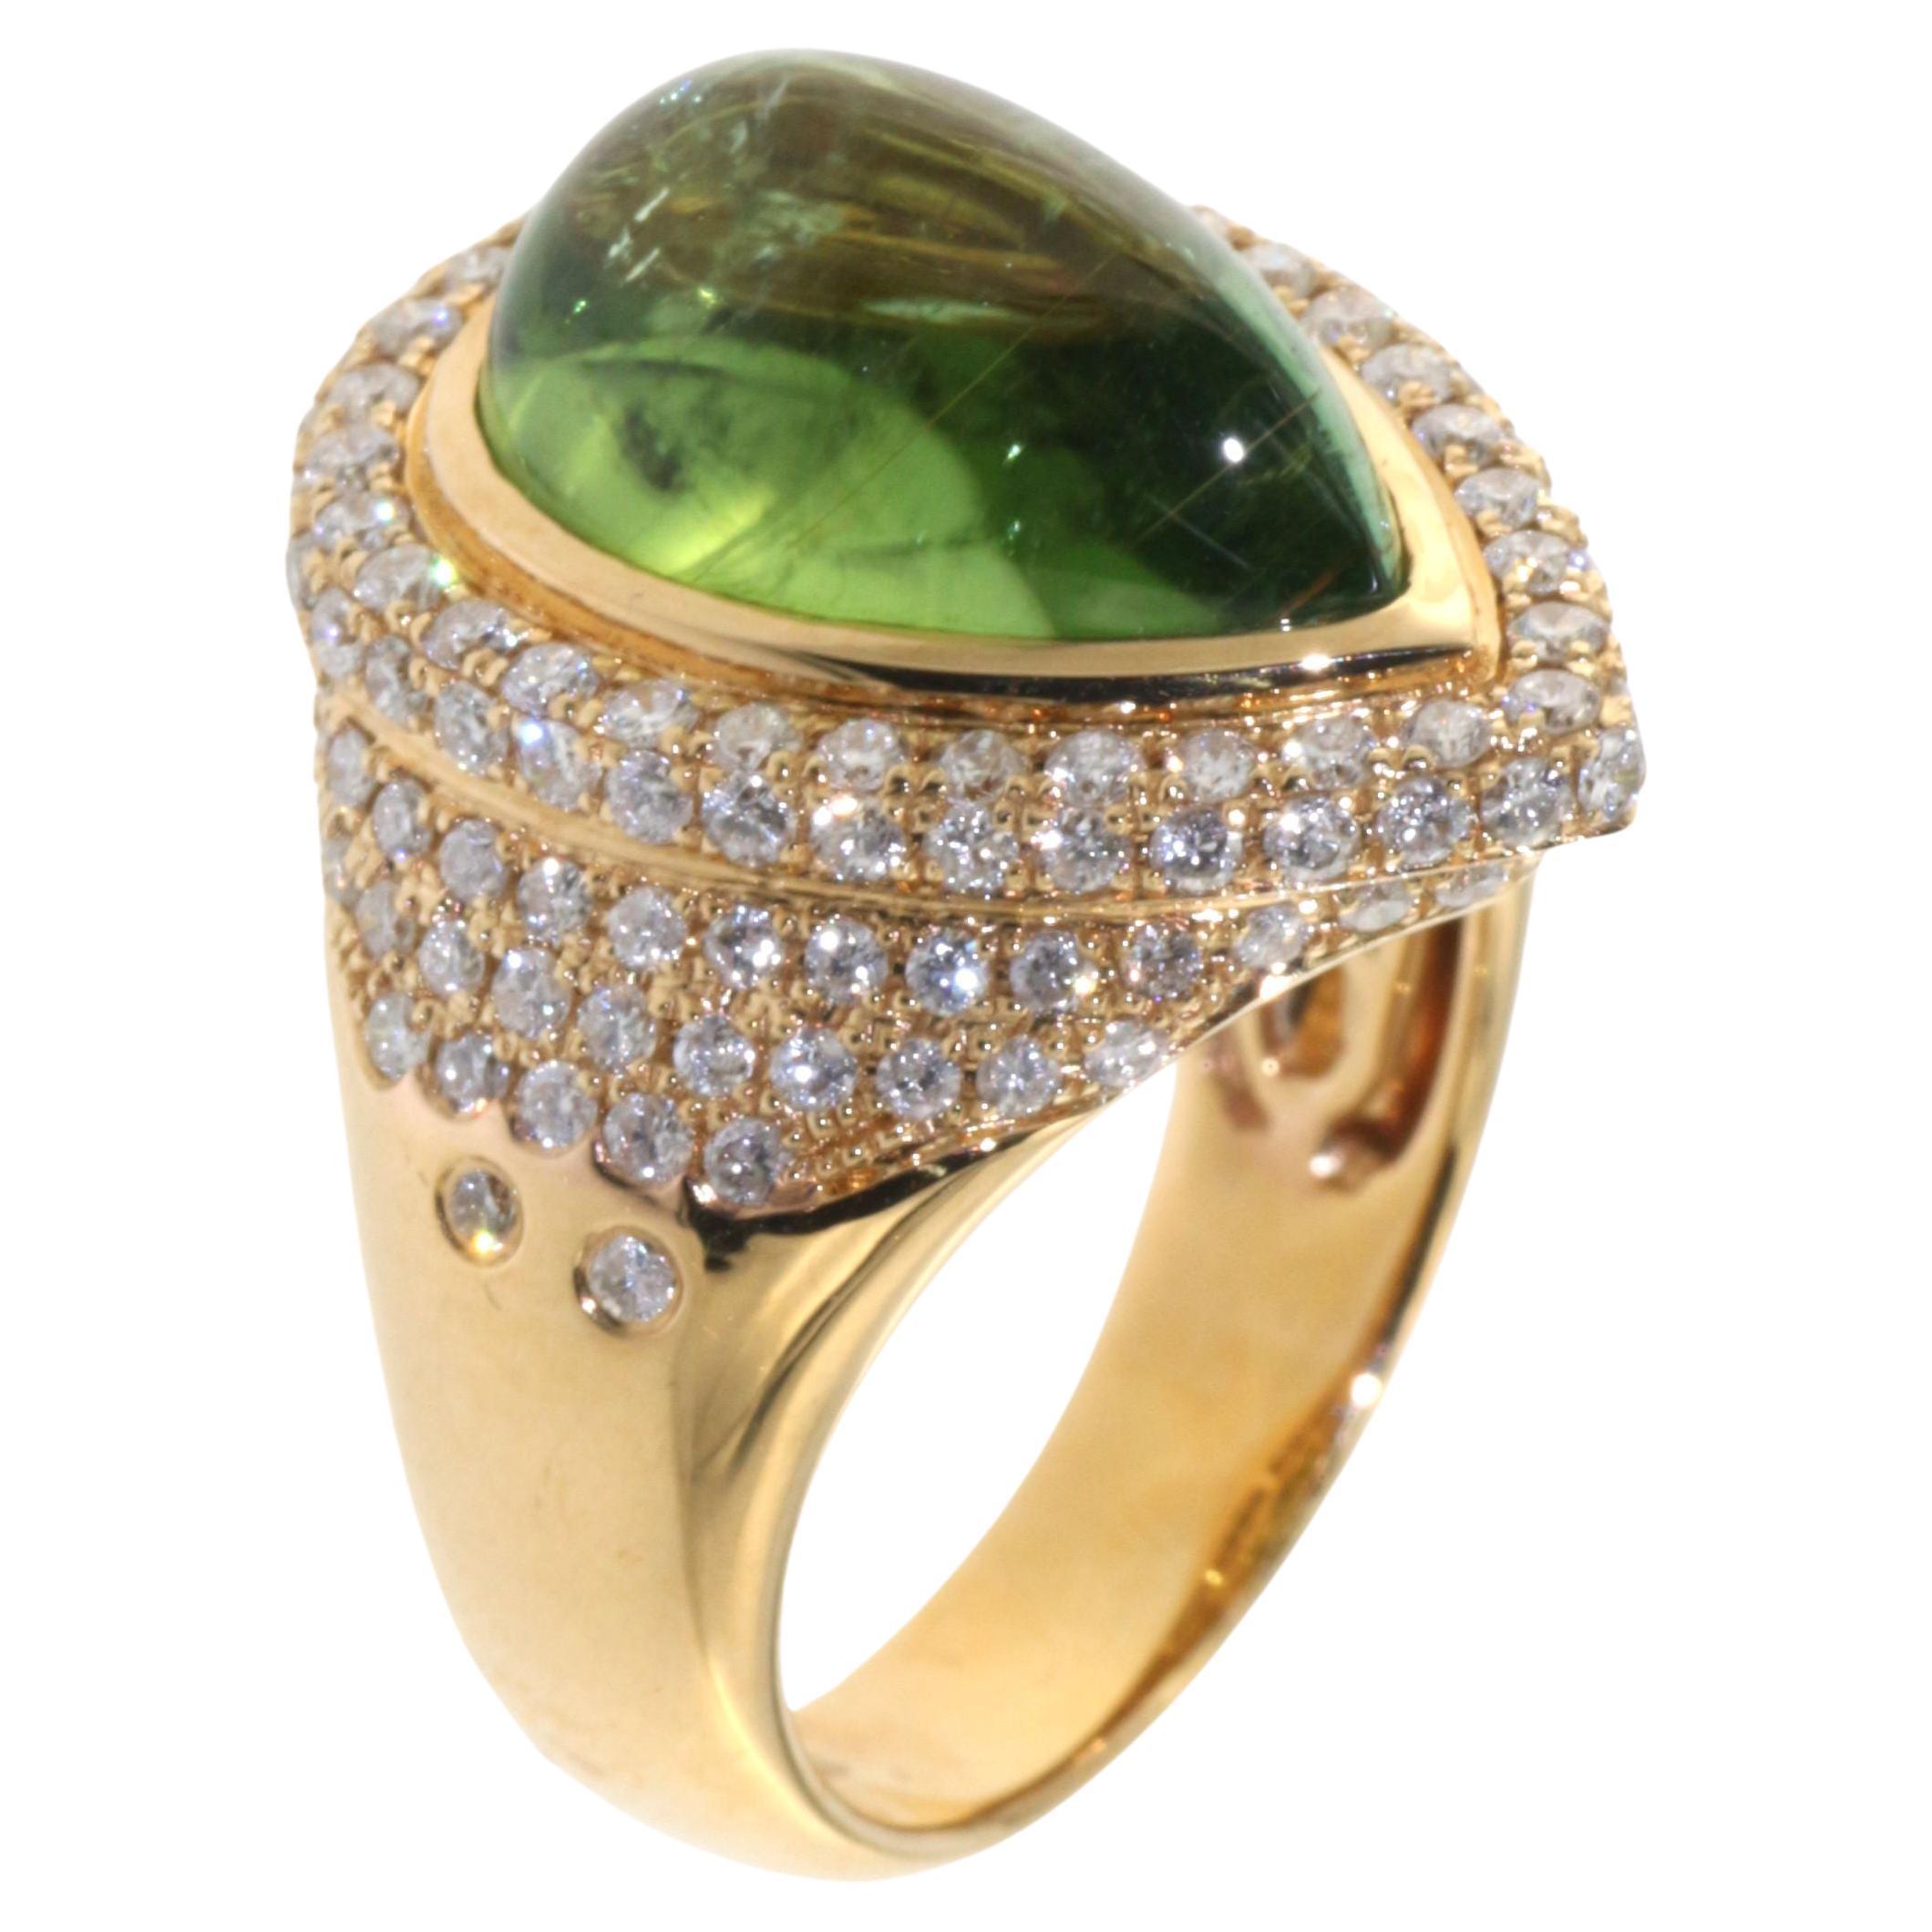 Vintage 7ct. Green Tourmaline Diamond Cocktail Ring in 18 Karat Yellow Gold